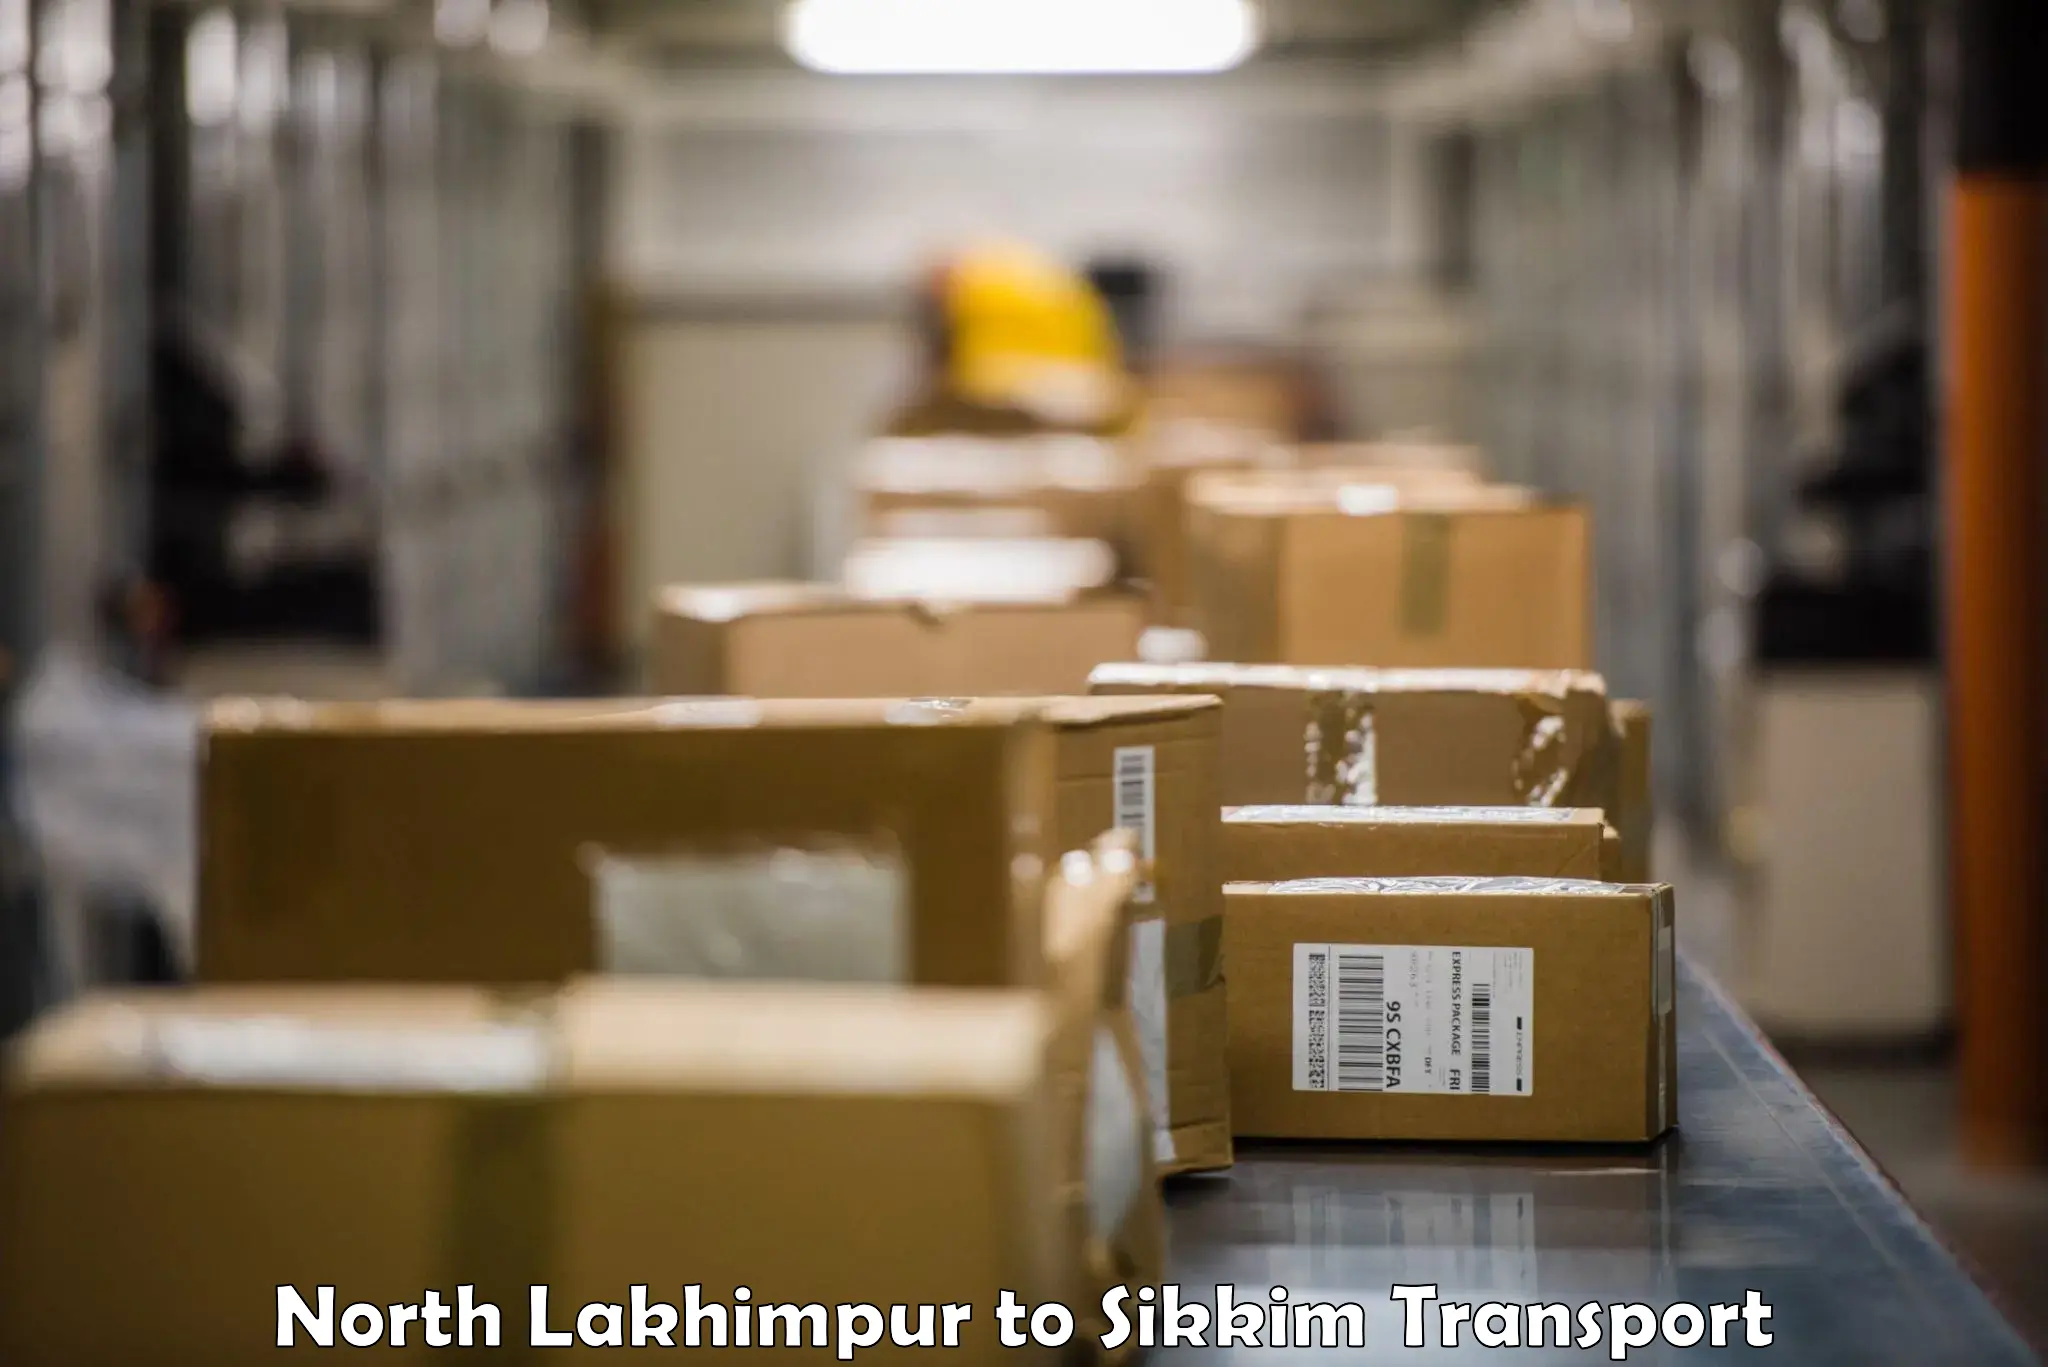 Shipping partner North Lakhimpur to Geyzing